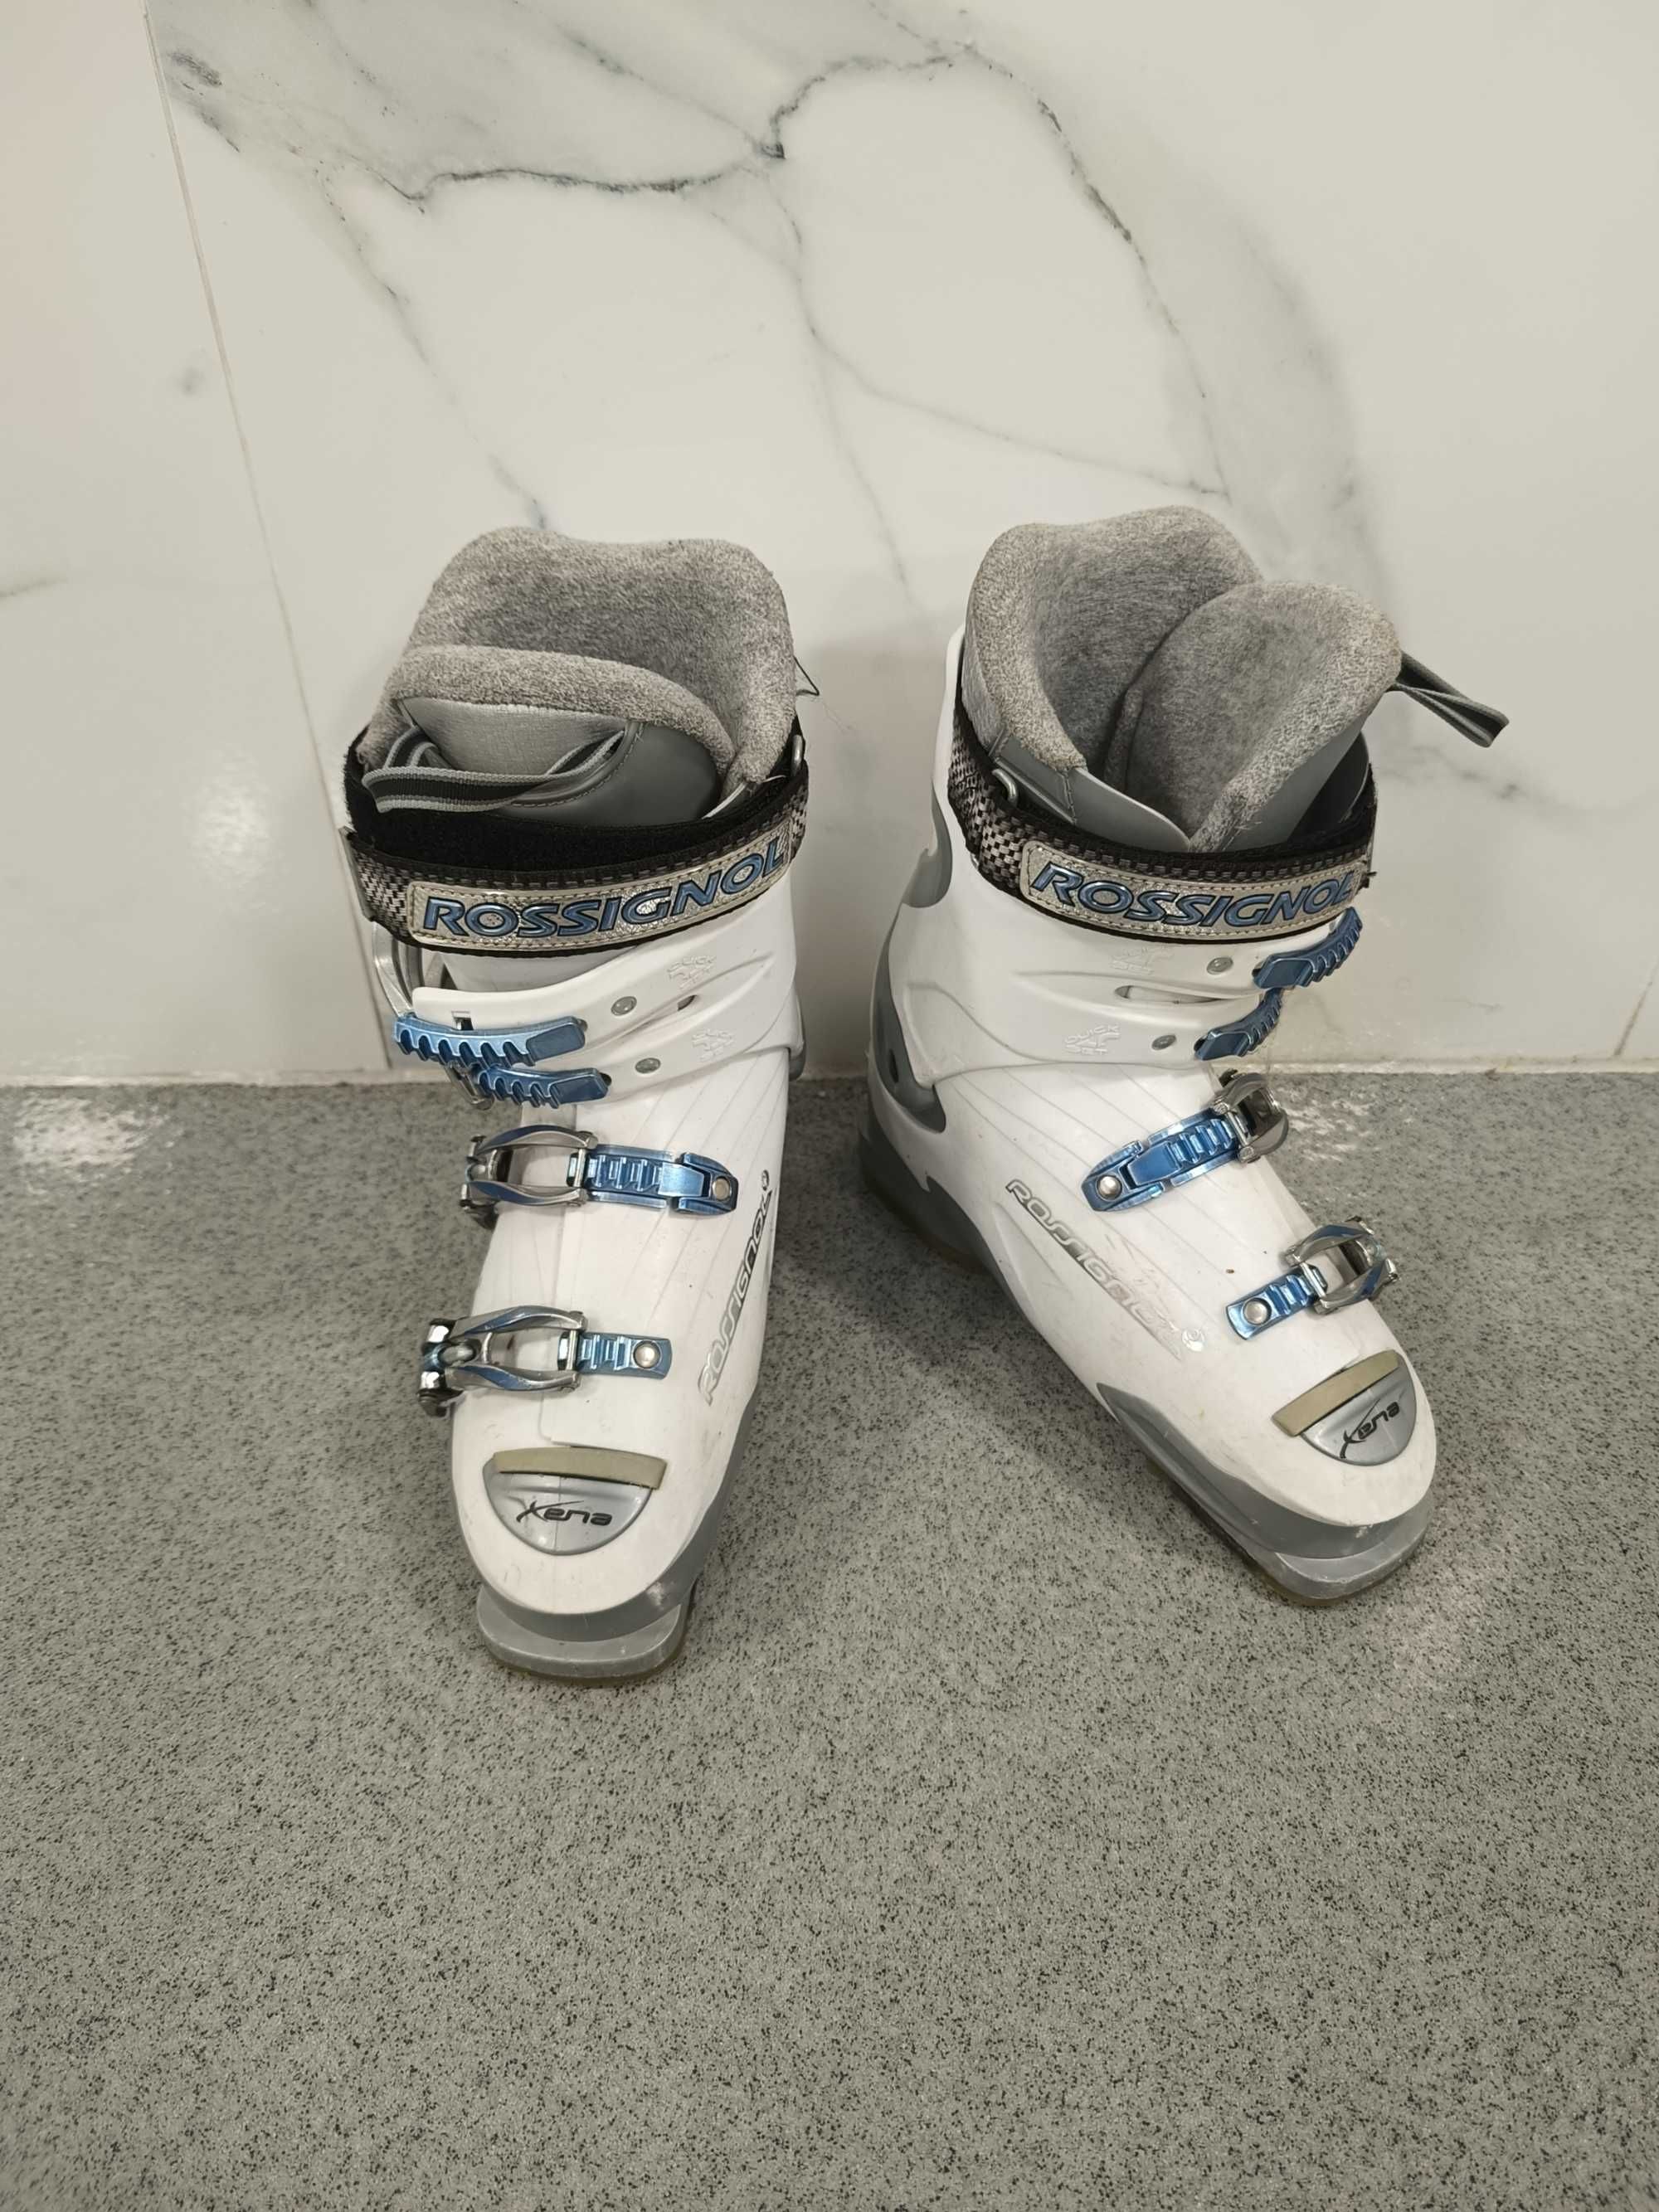 Rossignol Xena buty narciarskie damskie 25,5 cm dł wkładki.